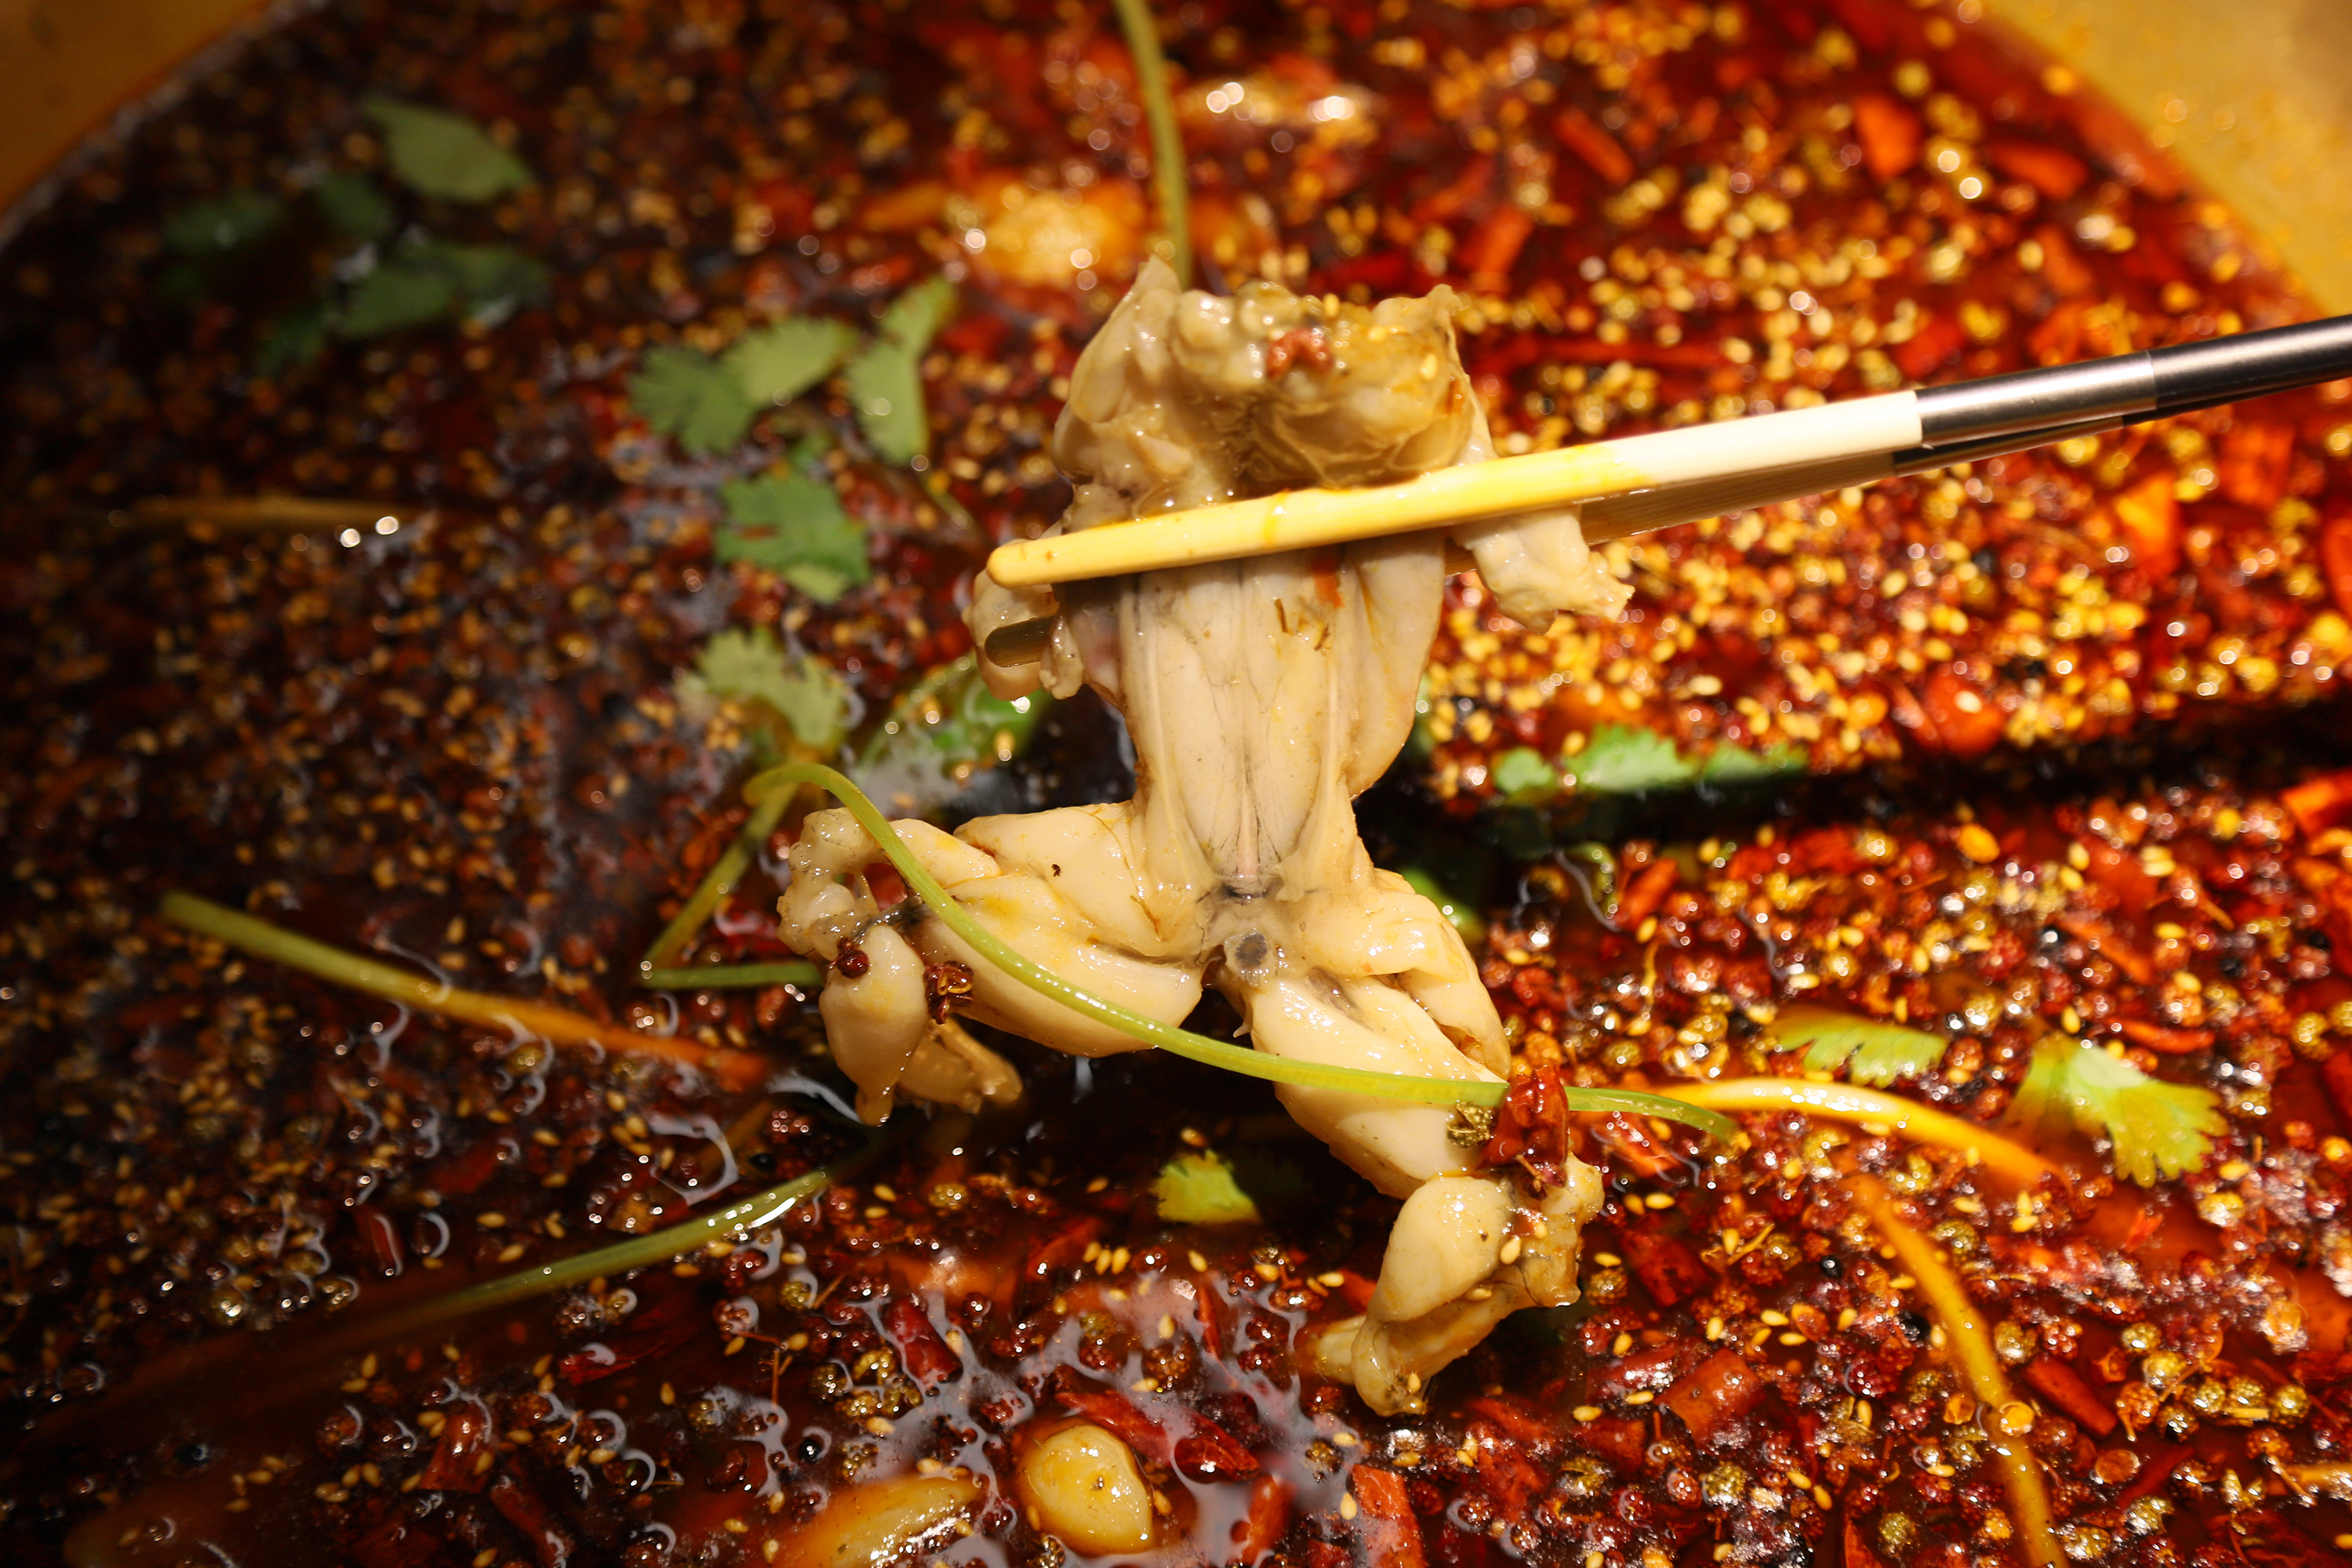 同蛙阁:风靡重庆的美蛙鱼头火锅空降北京工体,席卷盛夏美味